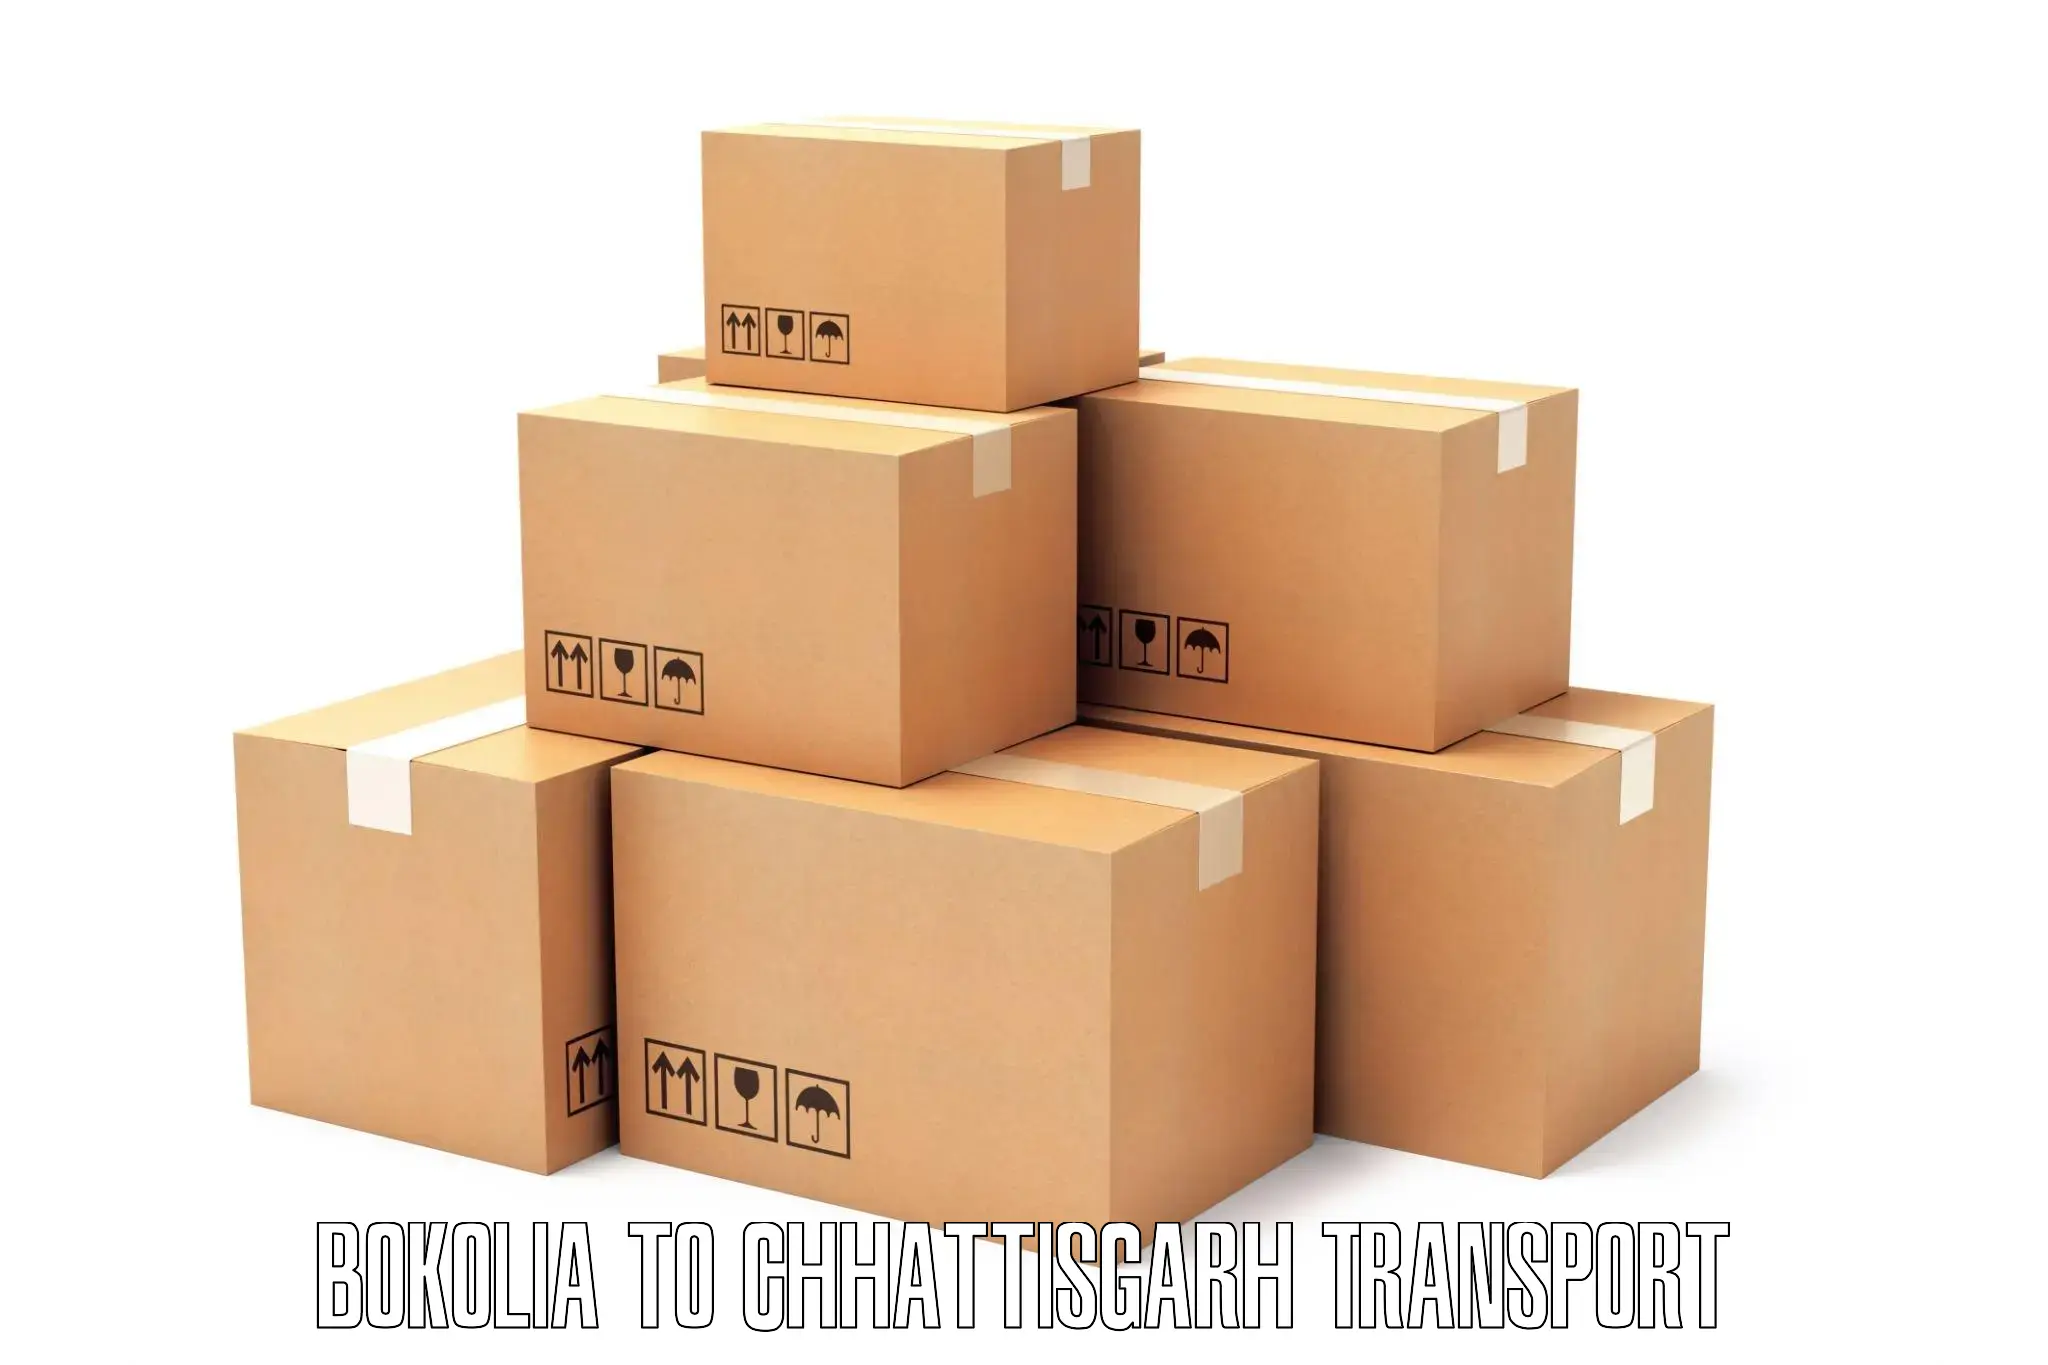 Container transport service Bokolia to Chhattisgarh